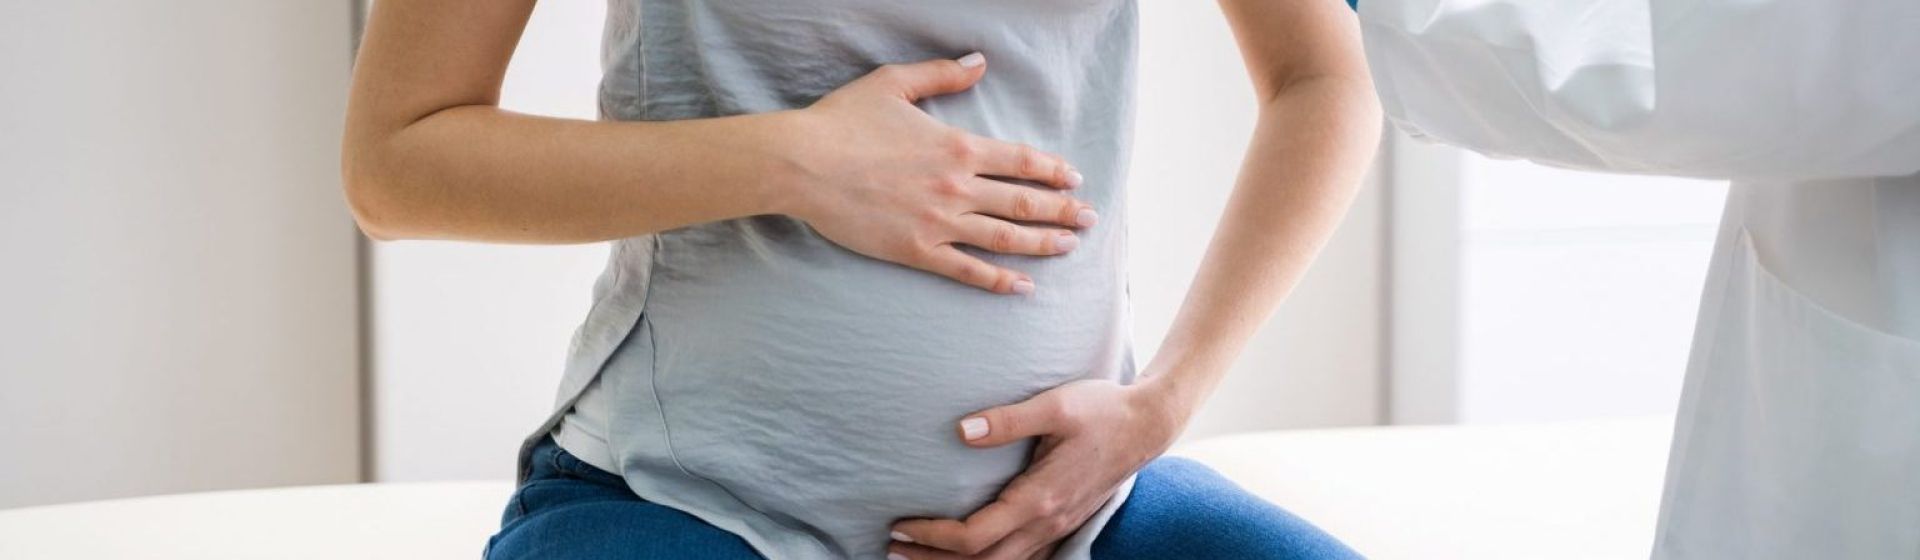 Боли в животе при беременности — когда нужно срочно обратиться к врачу?